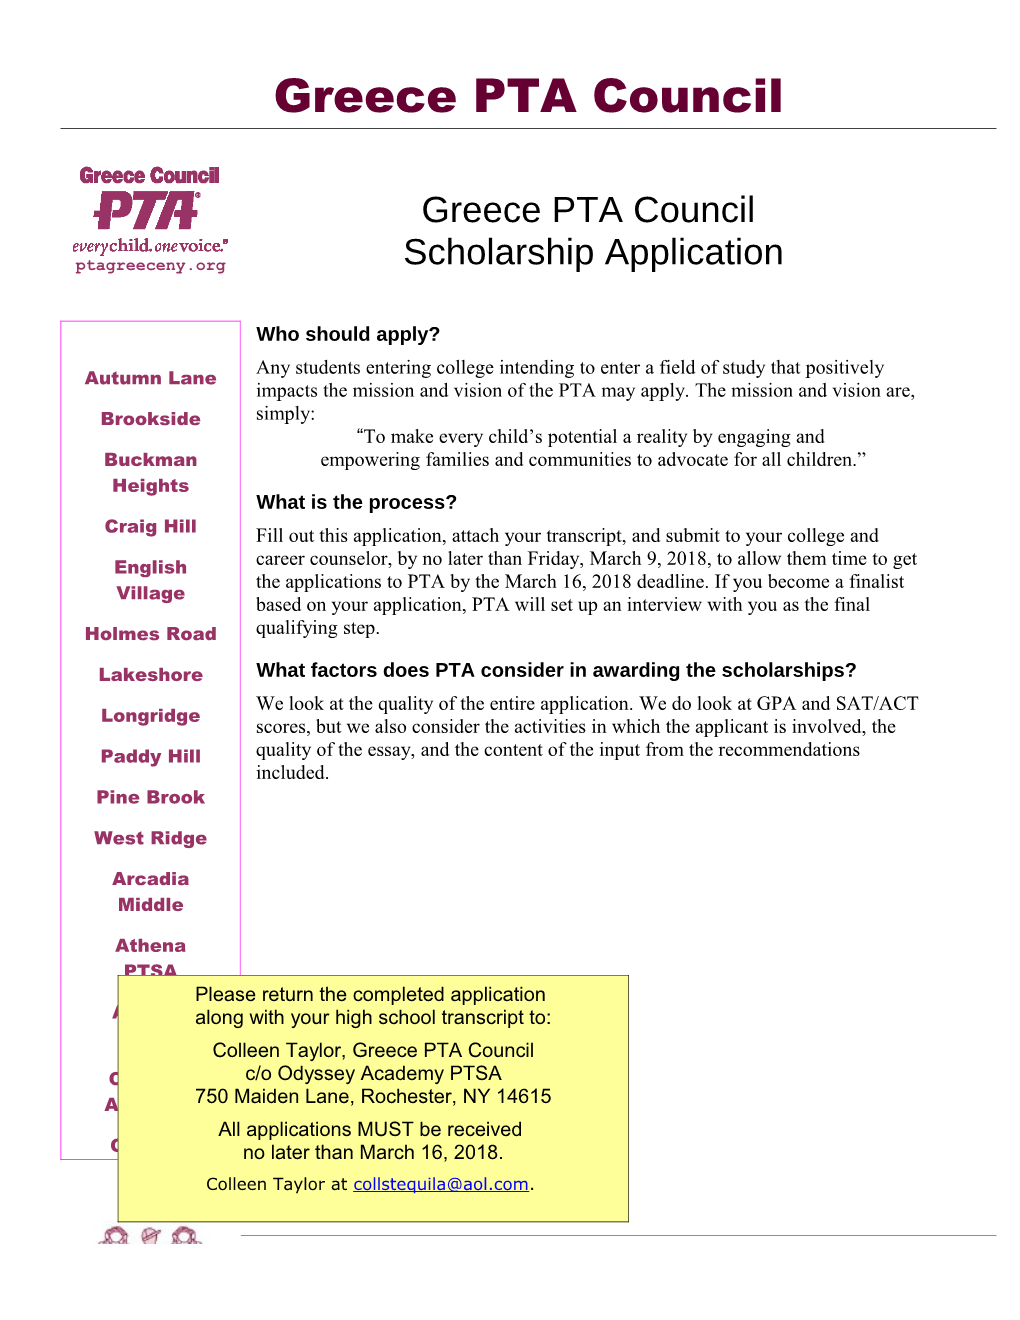 Greece PTA Council Scholarship Application